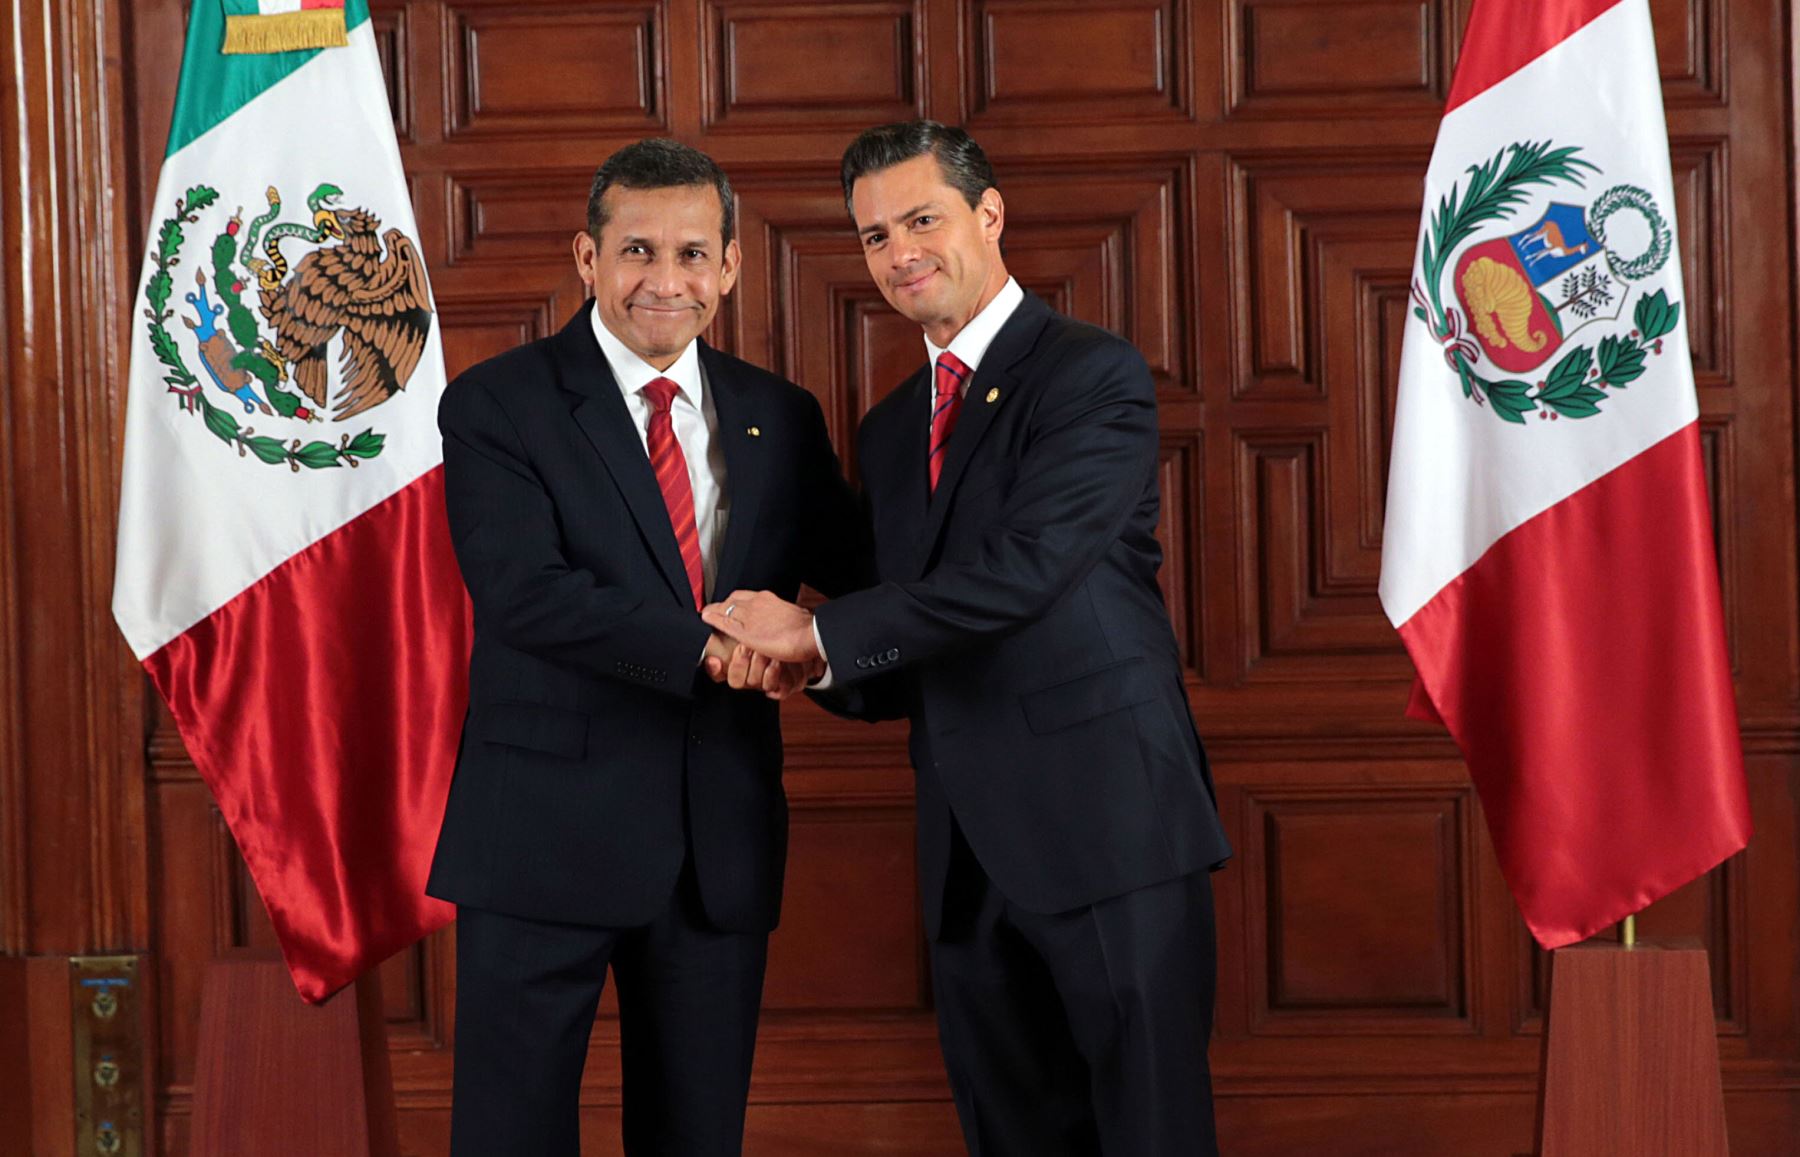 Audiencia de los presidente Ollanta Humala y Enrique Peña Nieto, y reunión ampliada con sus respectivas comitivas.Foto: ANDINA/Prensa Presidencia